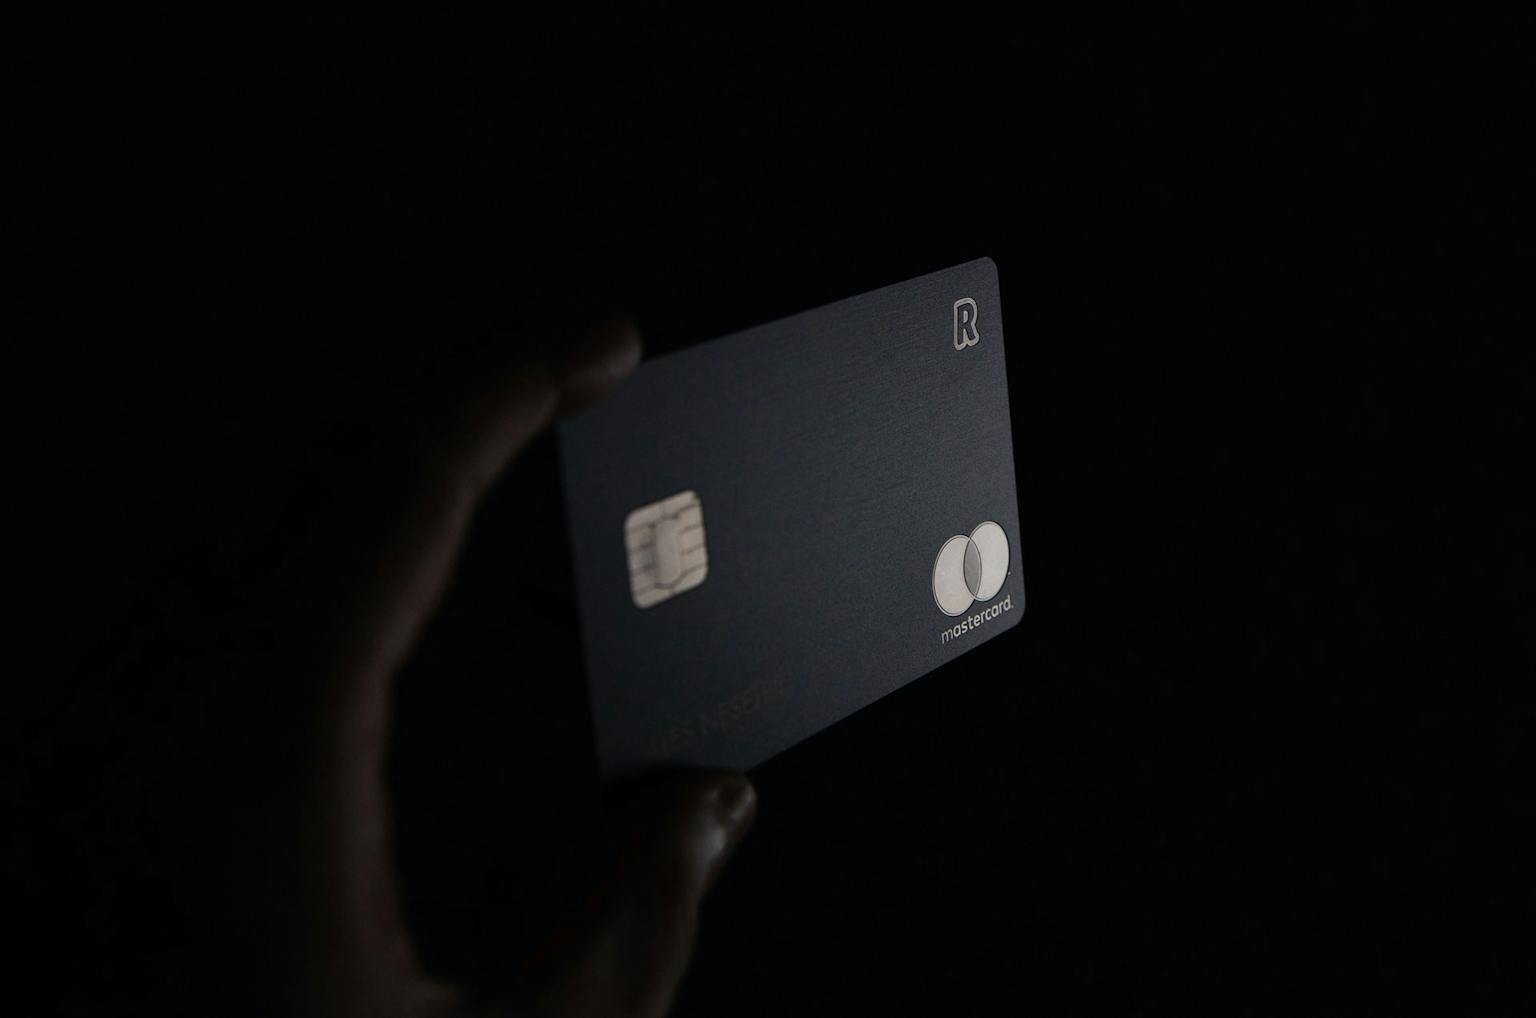 4 เครือบัตรเครดิตและบัตรกดเงินสด ที่ปรับลดอัตราการผ่อนชำระเพื่อเยียวยาลูกหนี้ในช่วงนี้!​